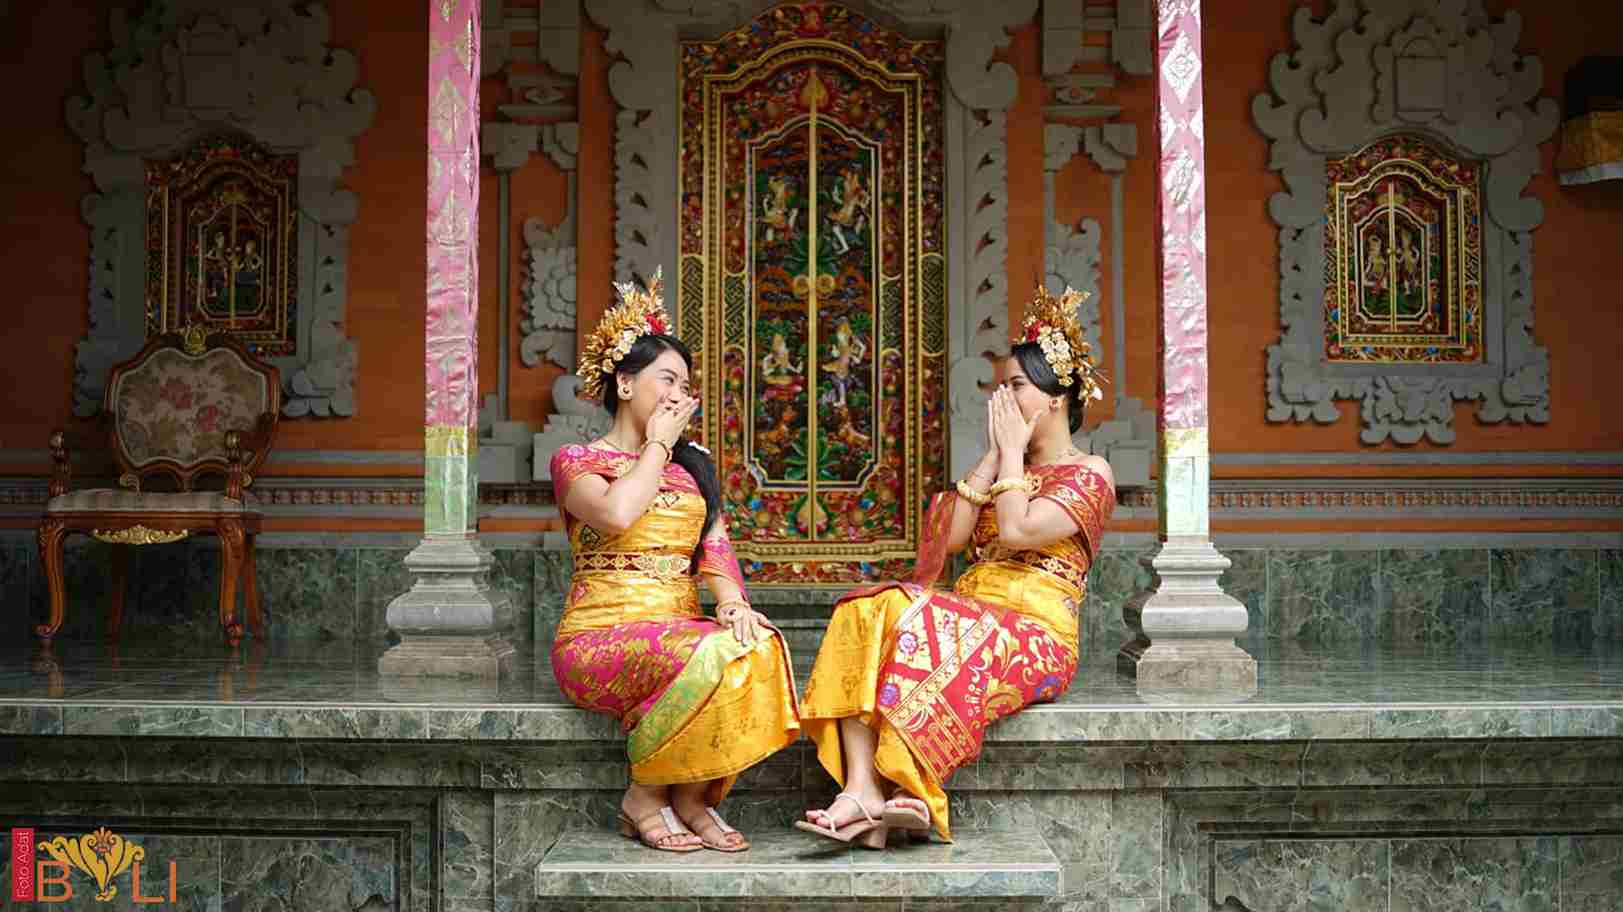 Rumah Bali - Bali Foto Adat